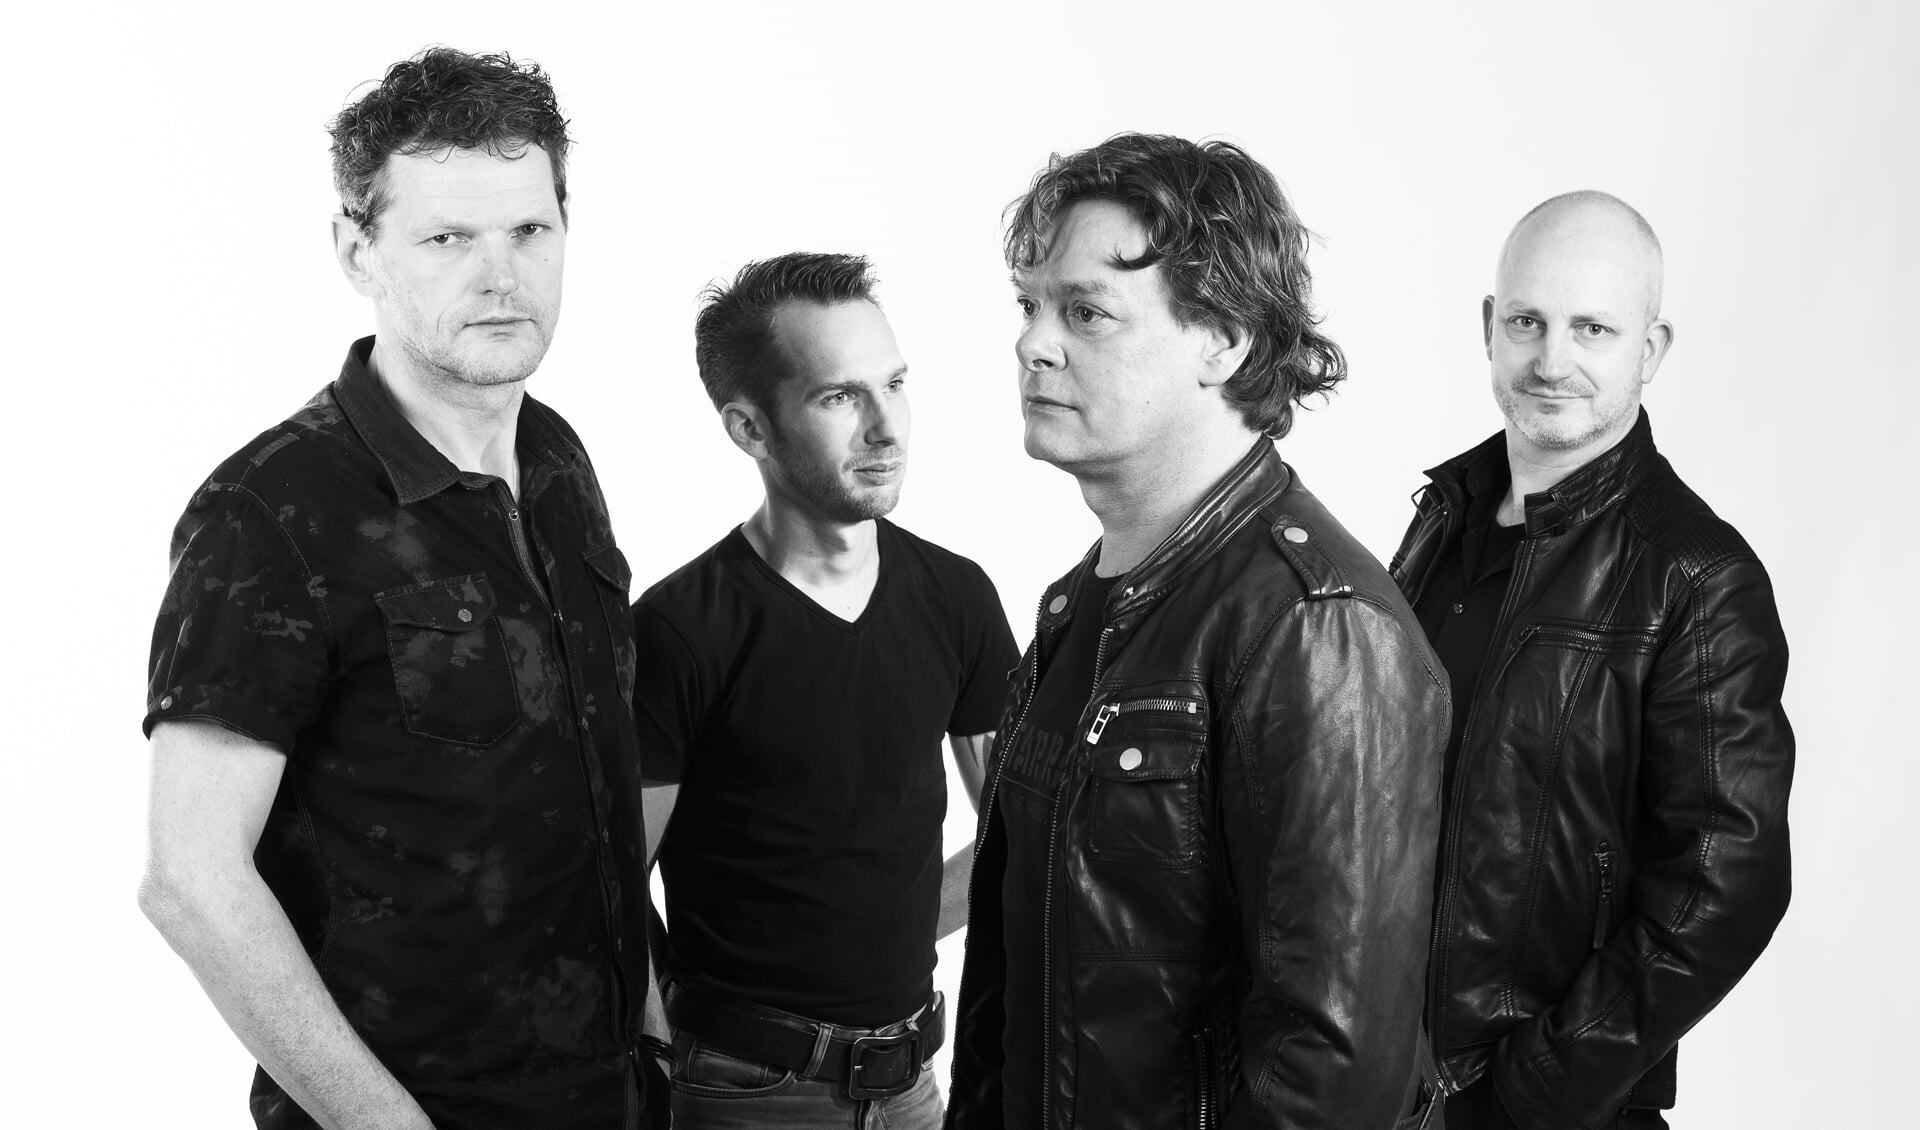 Like U2 treedt op tijdens Cultuurcafé Live op zaterdag 22 juni.